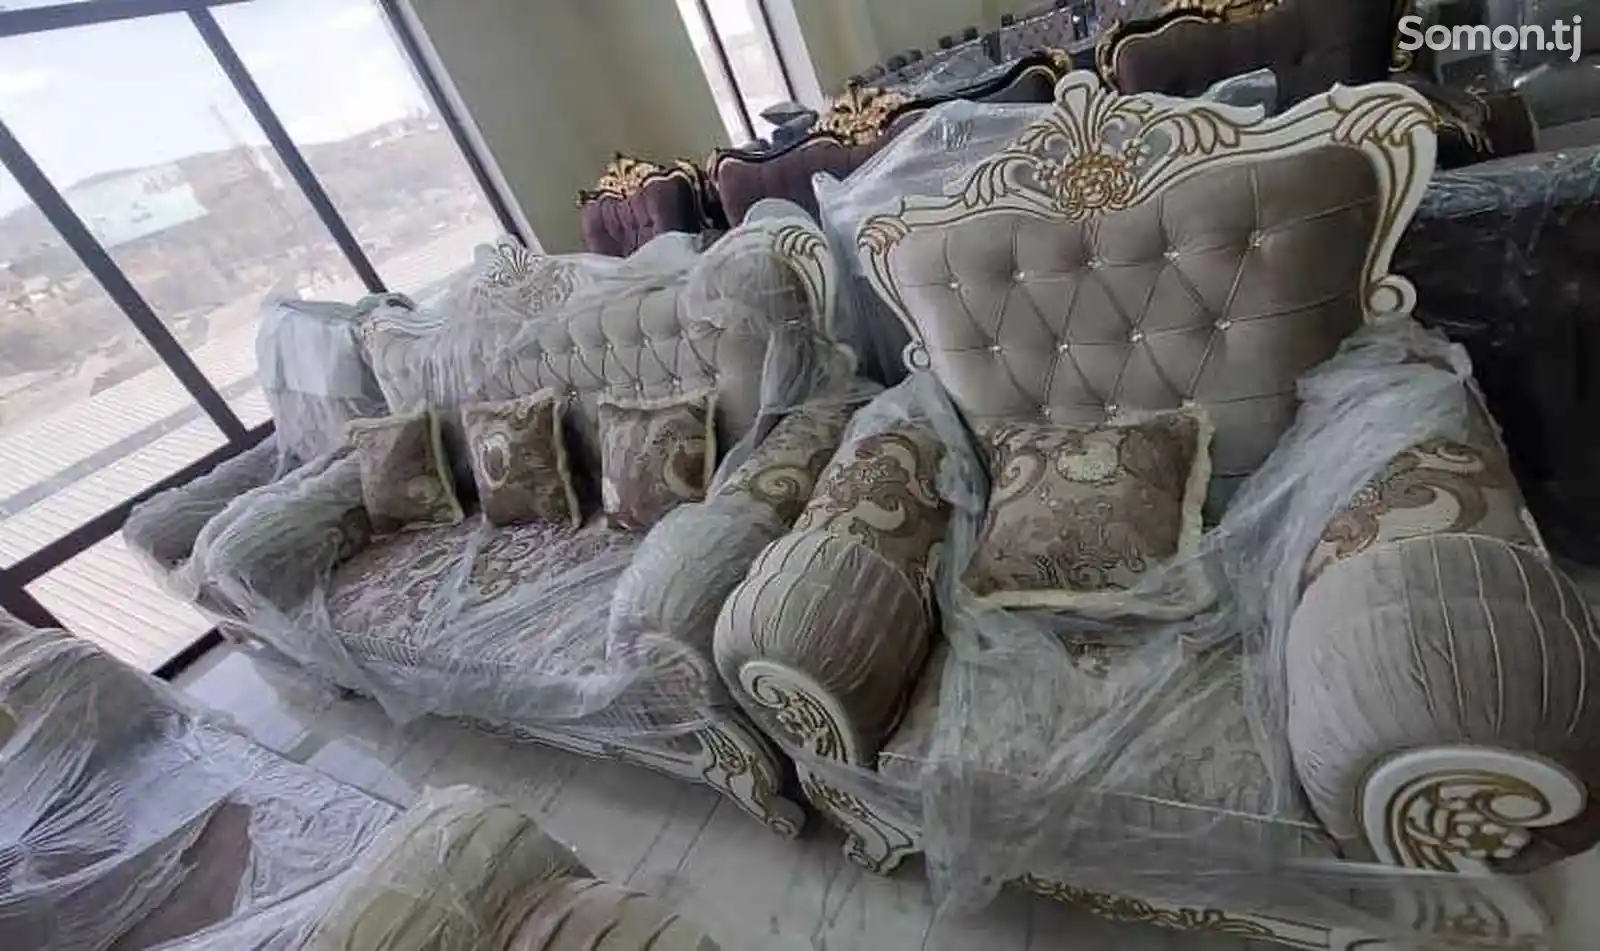 Королевский диван с креслами